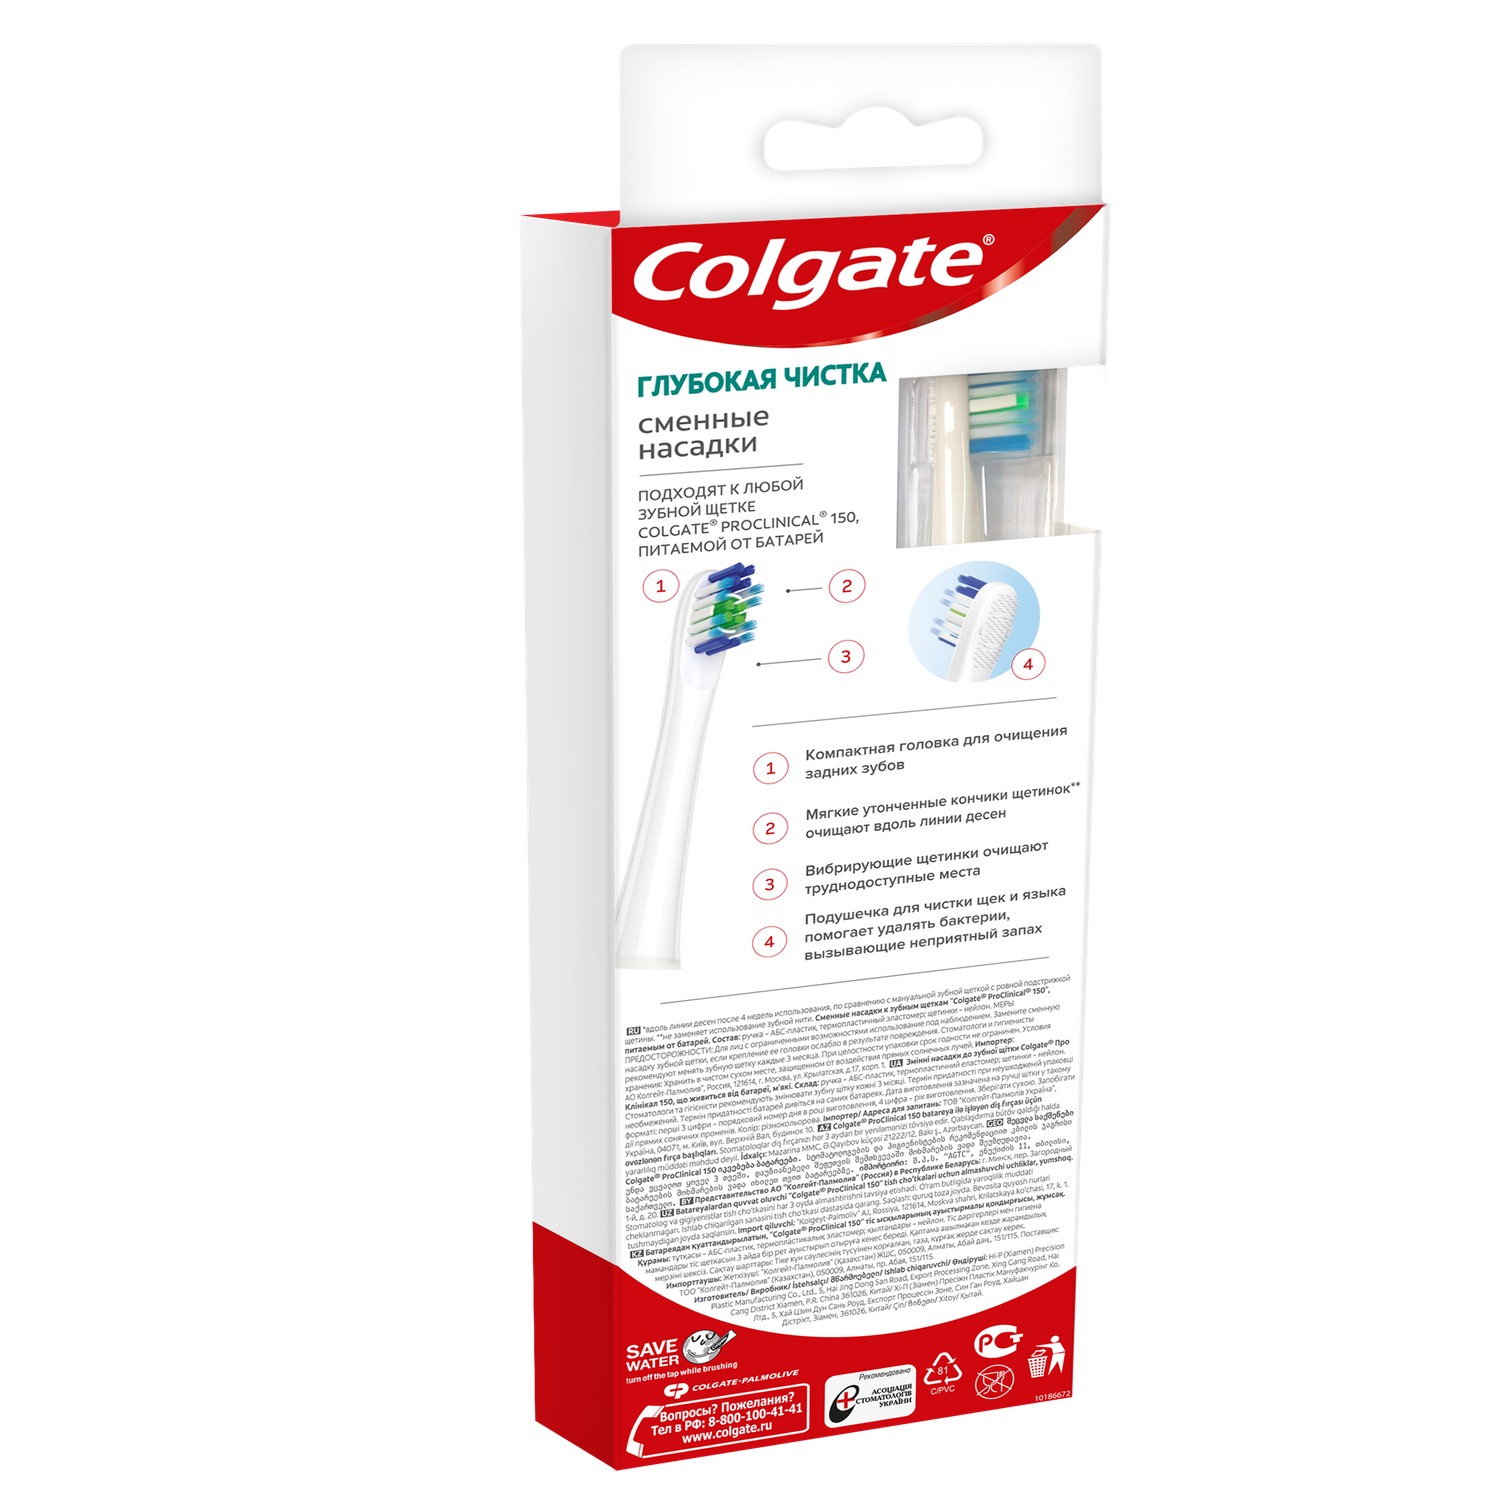 Колгейт Про-клиникал 150 насадка сменная для электрической щетки №2 aceco сменная насадка для электрической зубной щетки